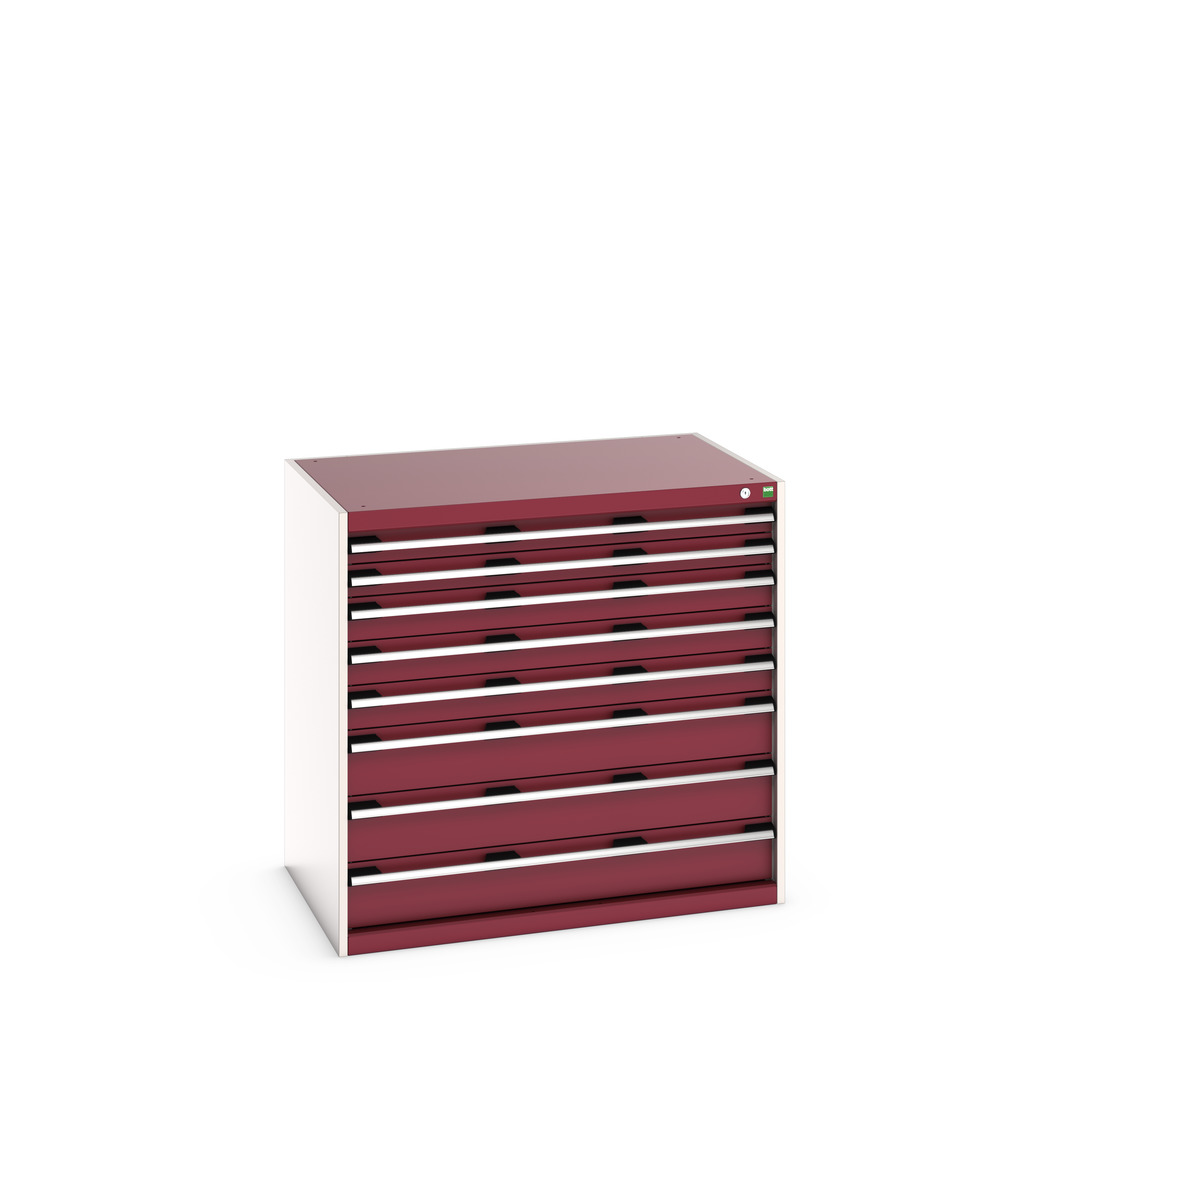 40029026.24V - cubio drawer cabinet